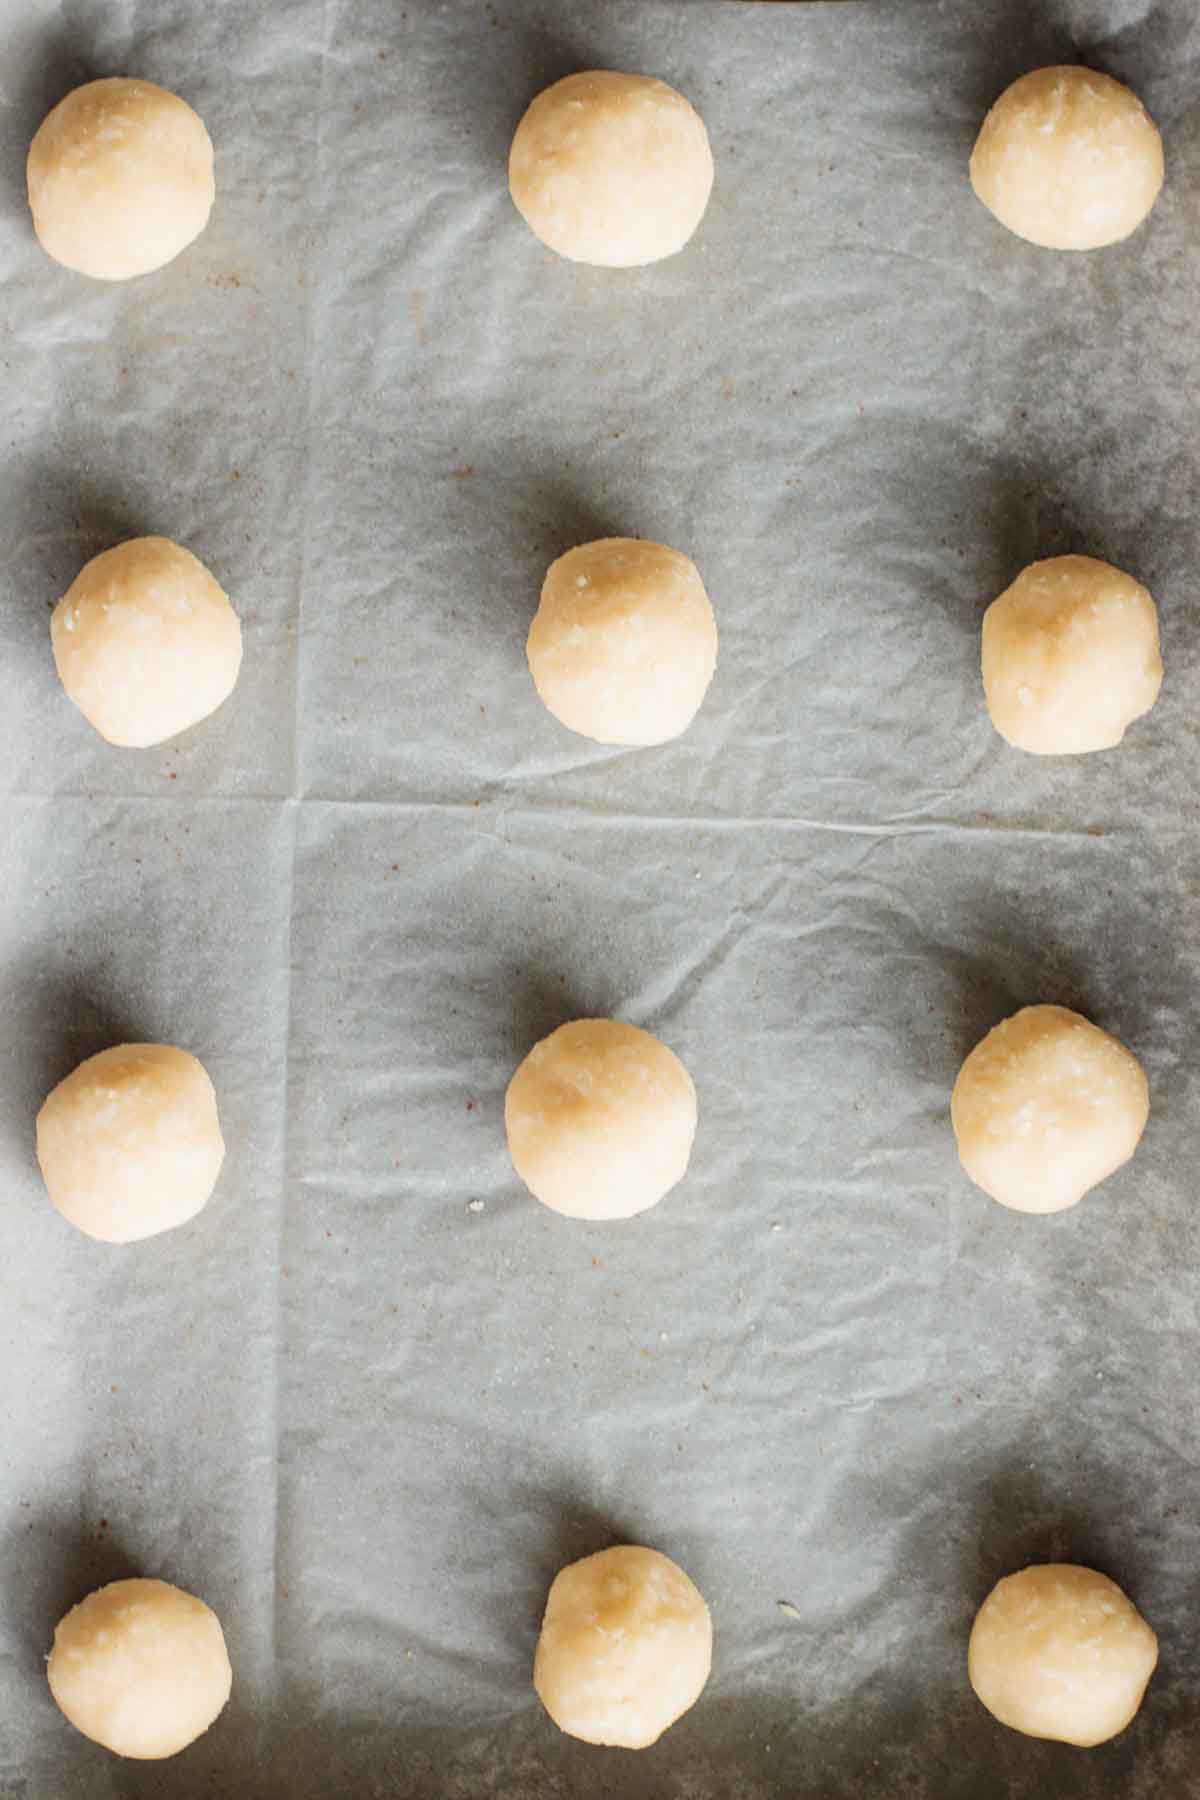 Dough shaped on baking sheet.